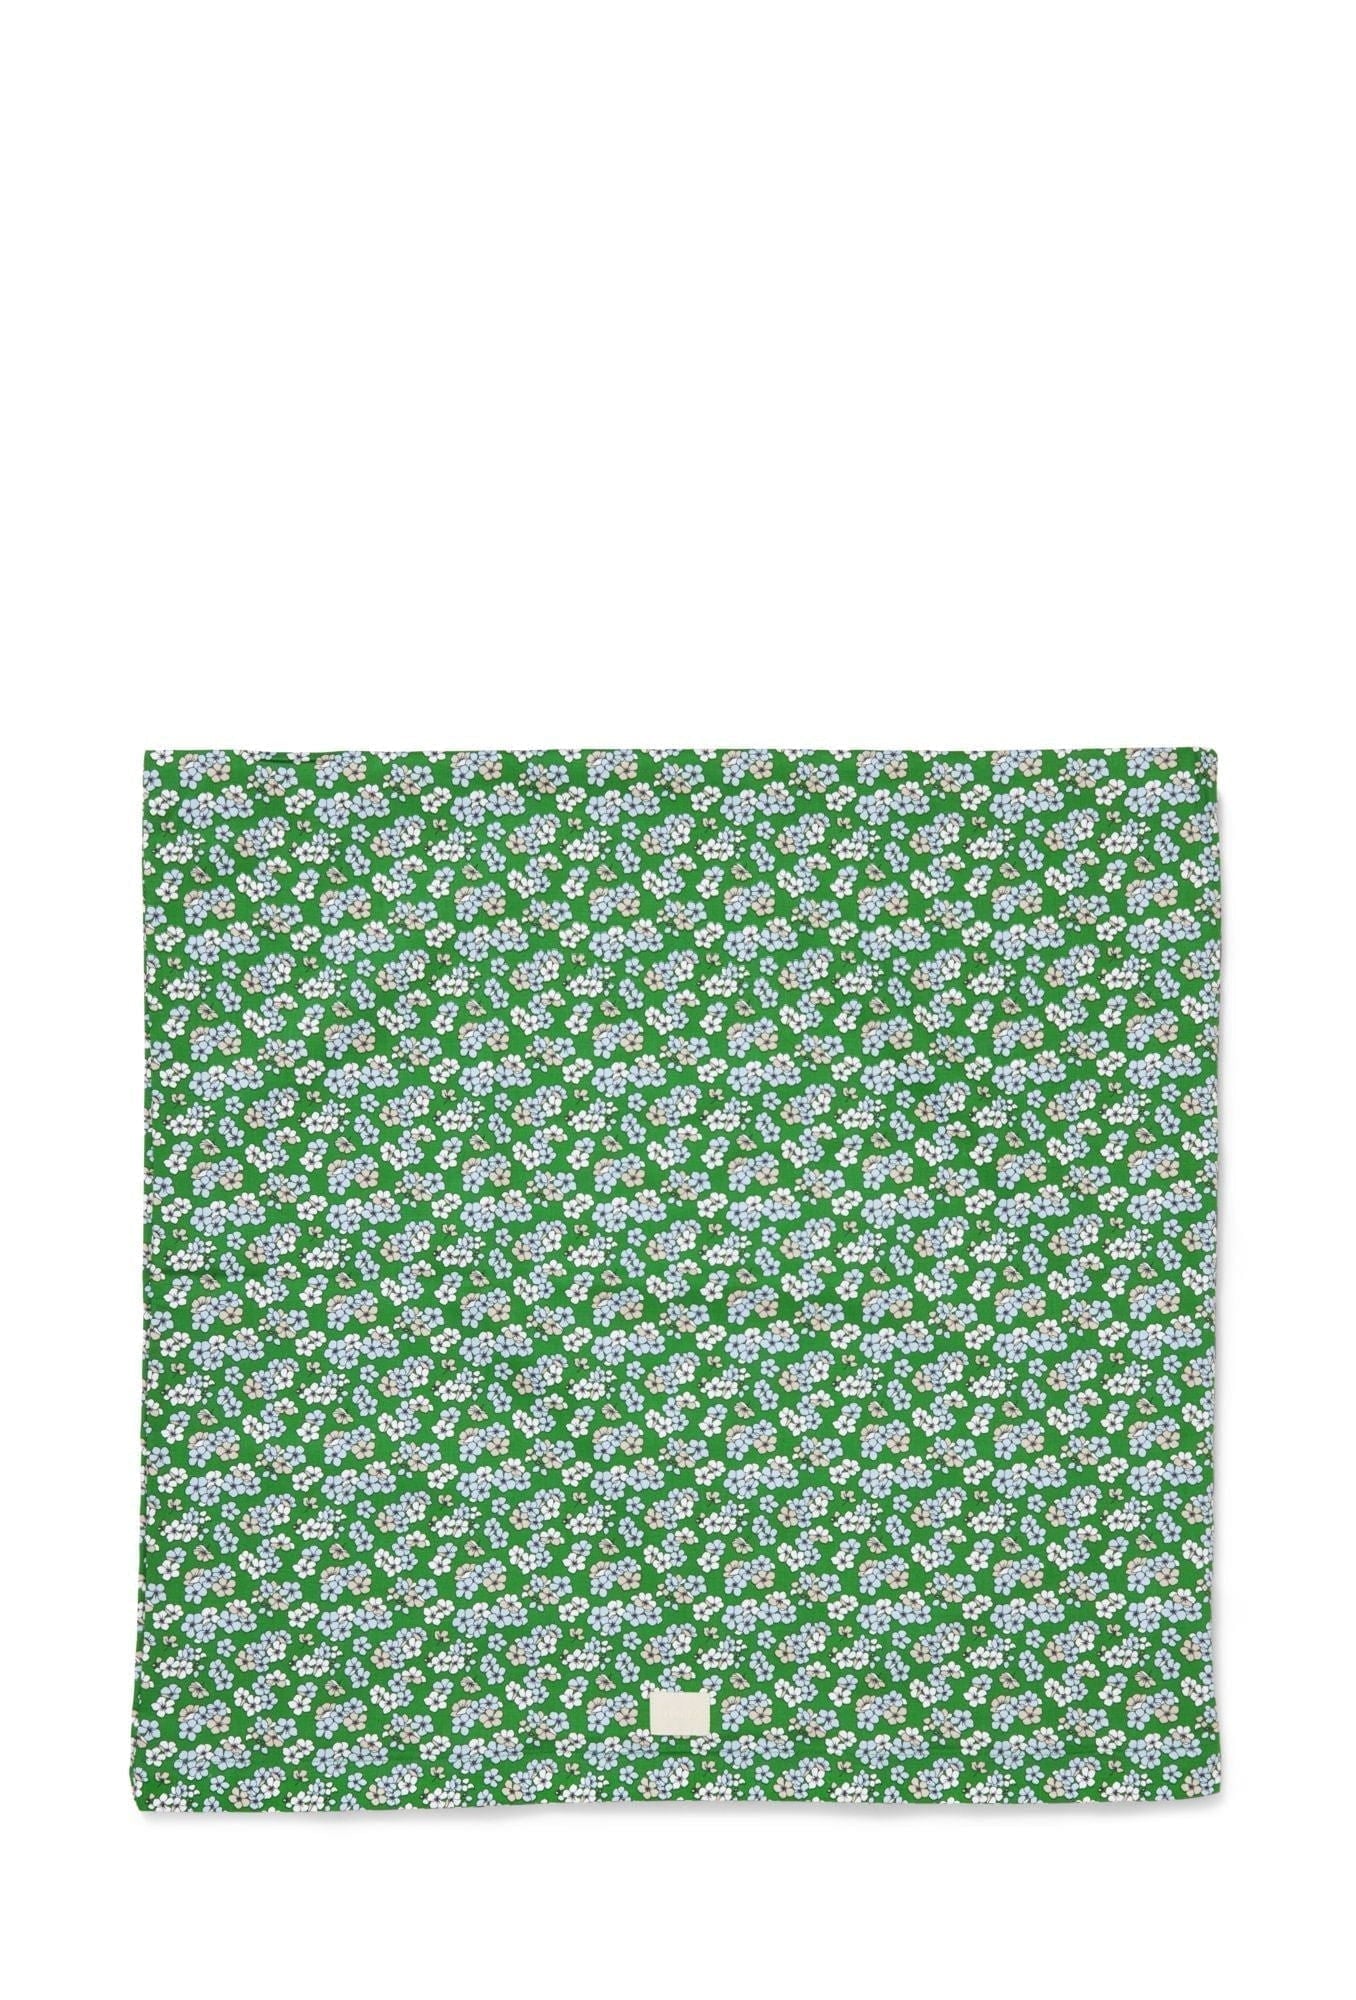 Juna piacevolmente federe 63x60 cm, verde